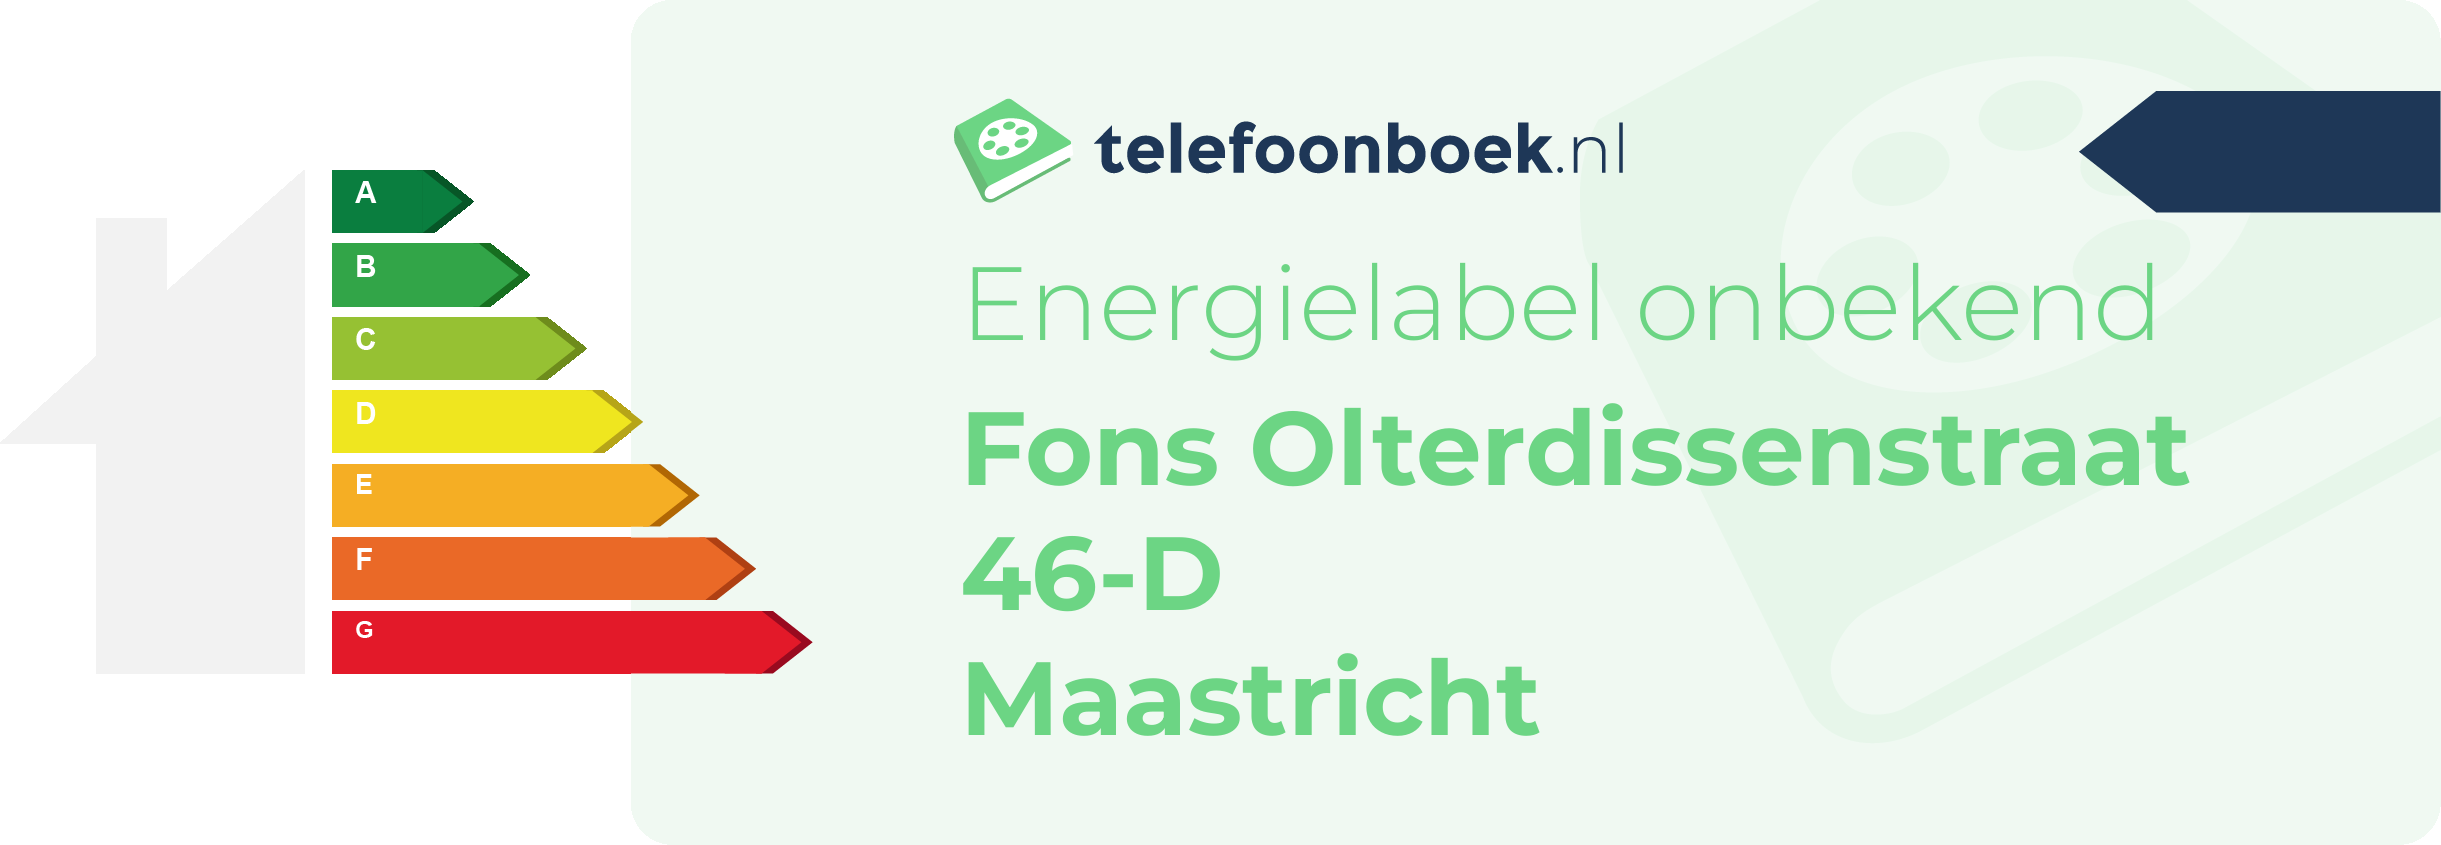 Energielabel Fons Olterdissenstraat 46-D Maastricht